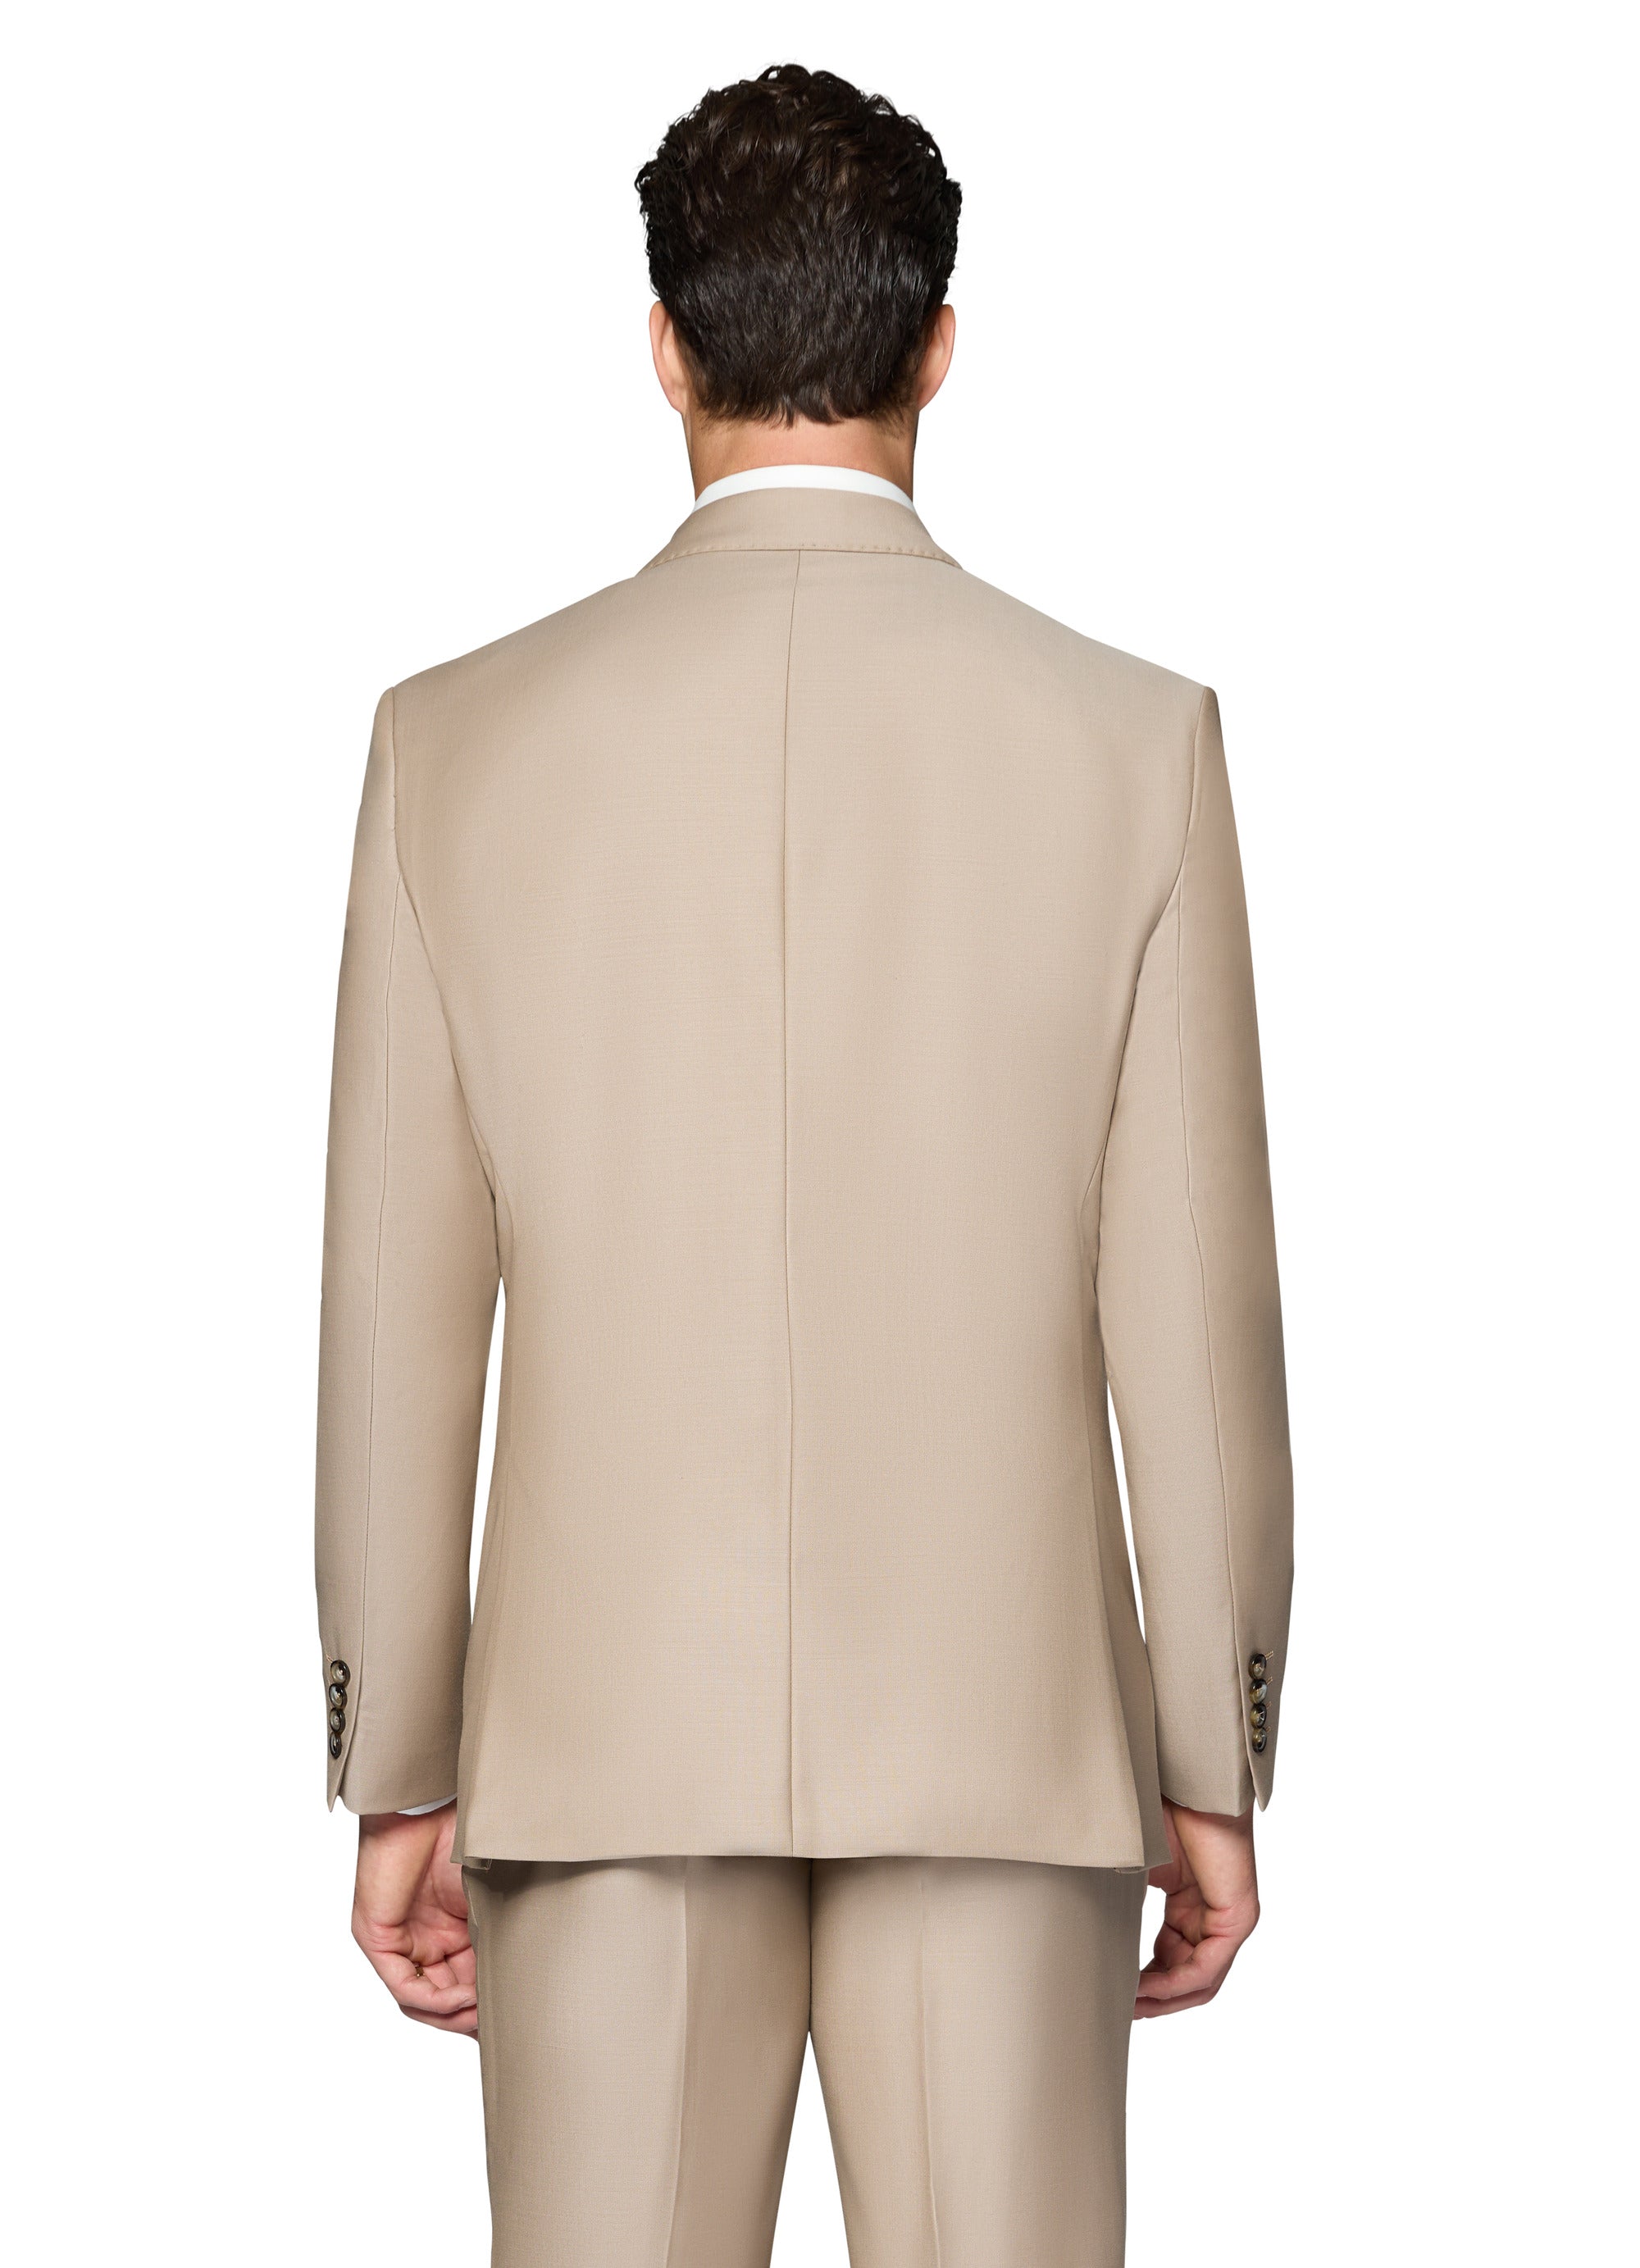 Berragamo Essex Elegant - Faille Wool Solid Suit - Taupe